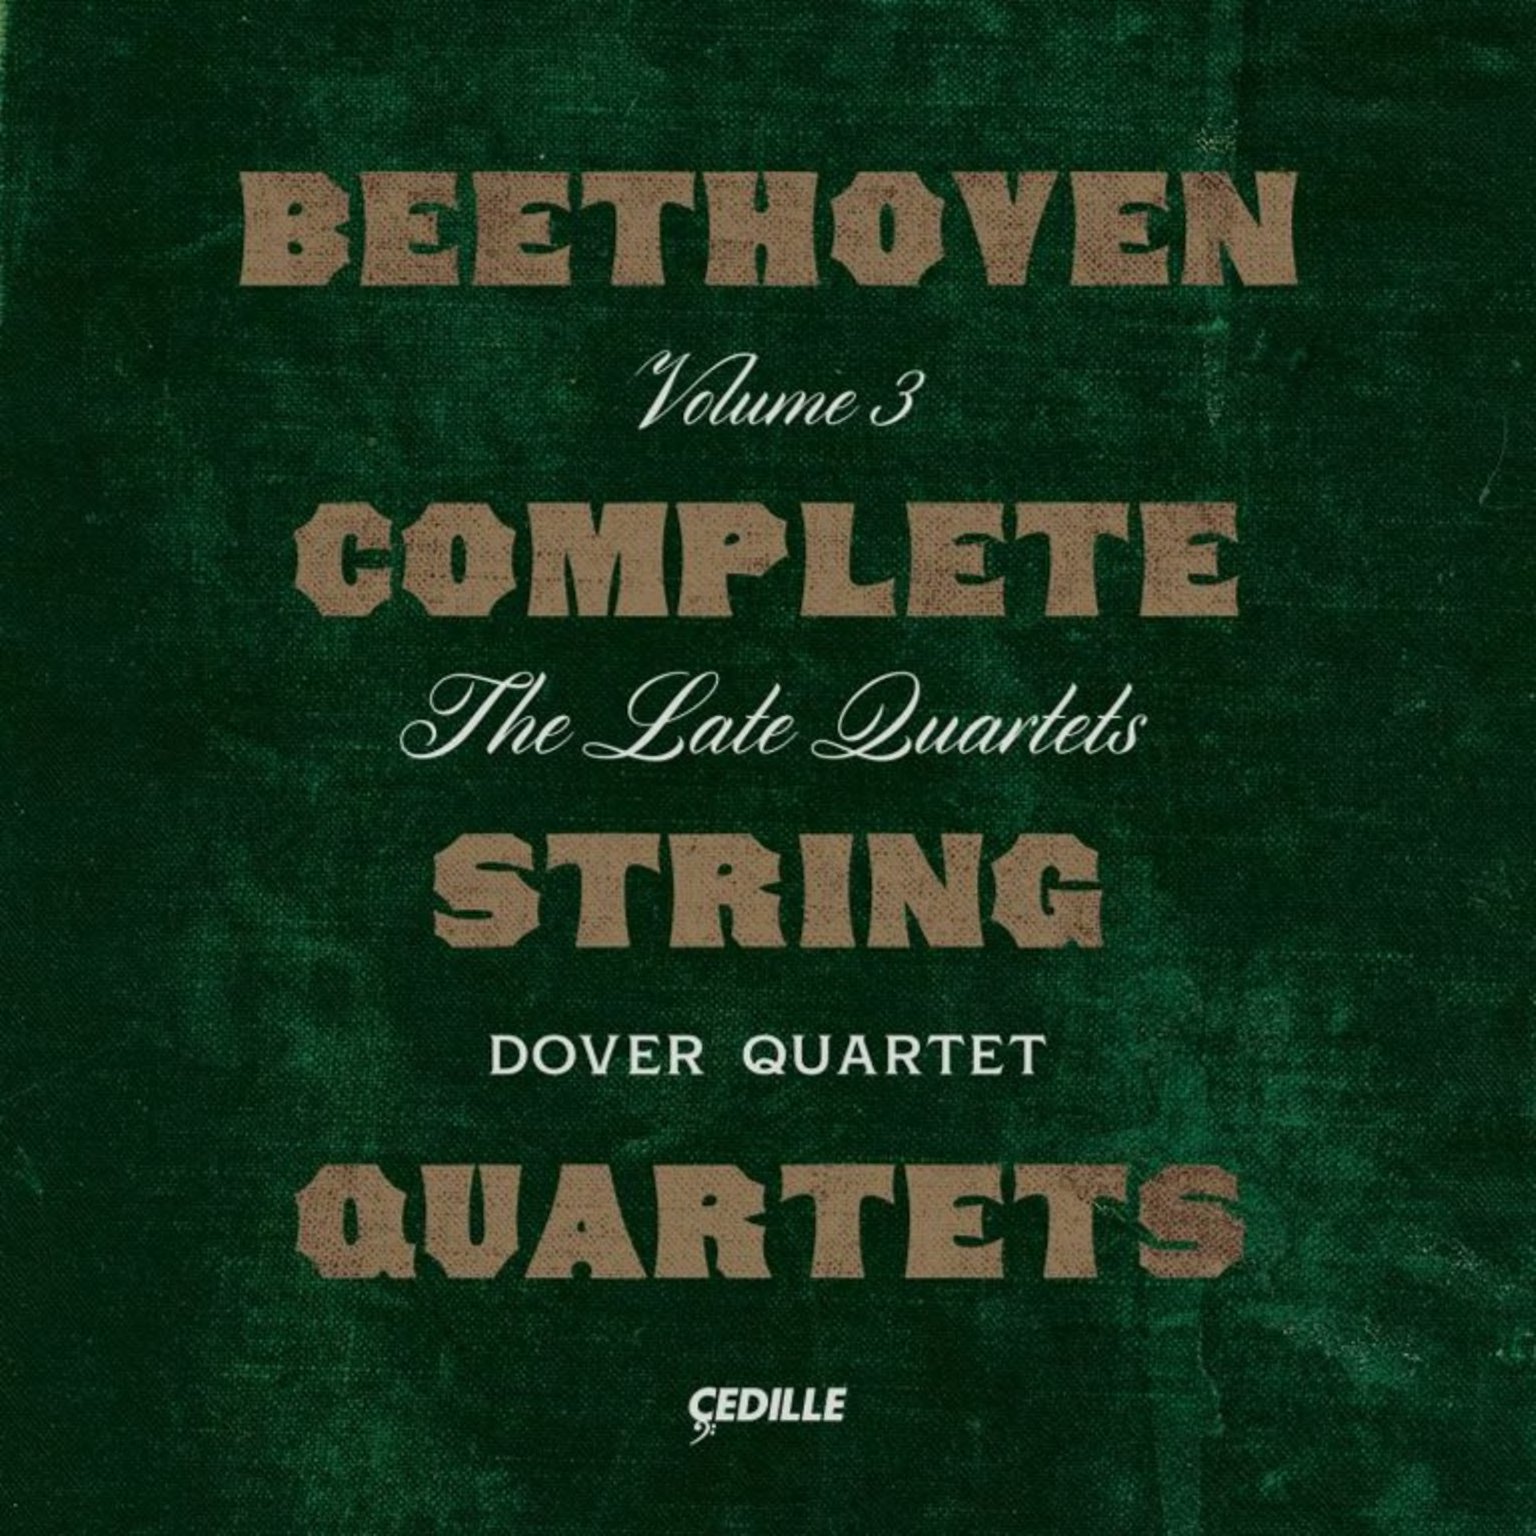 Beethoven: Complete String Quartets Volume 3 (Copy)